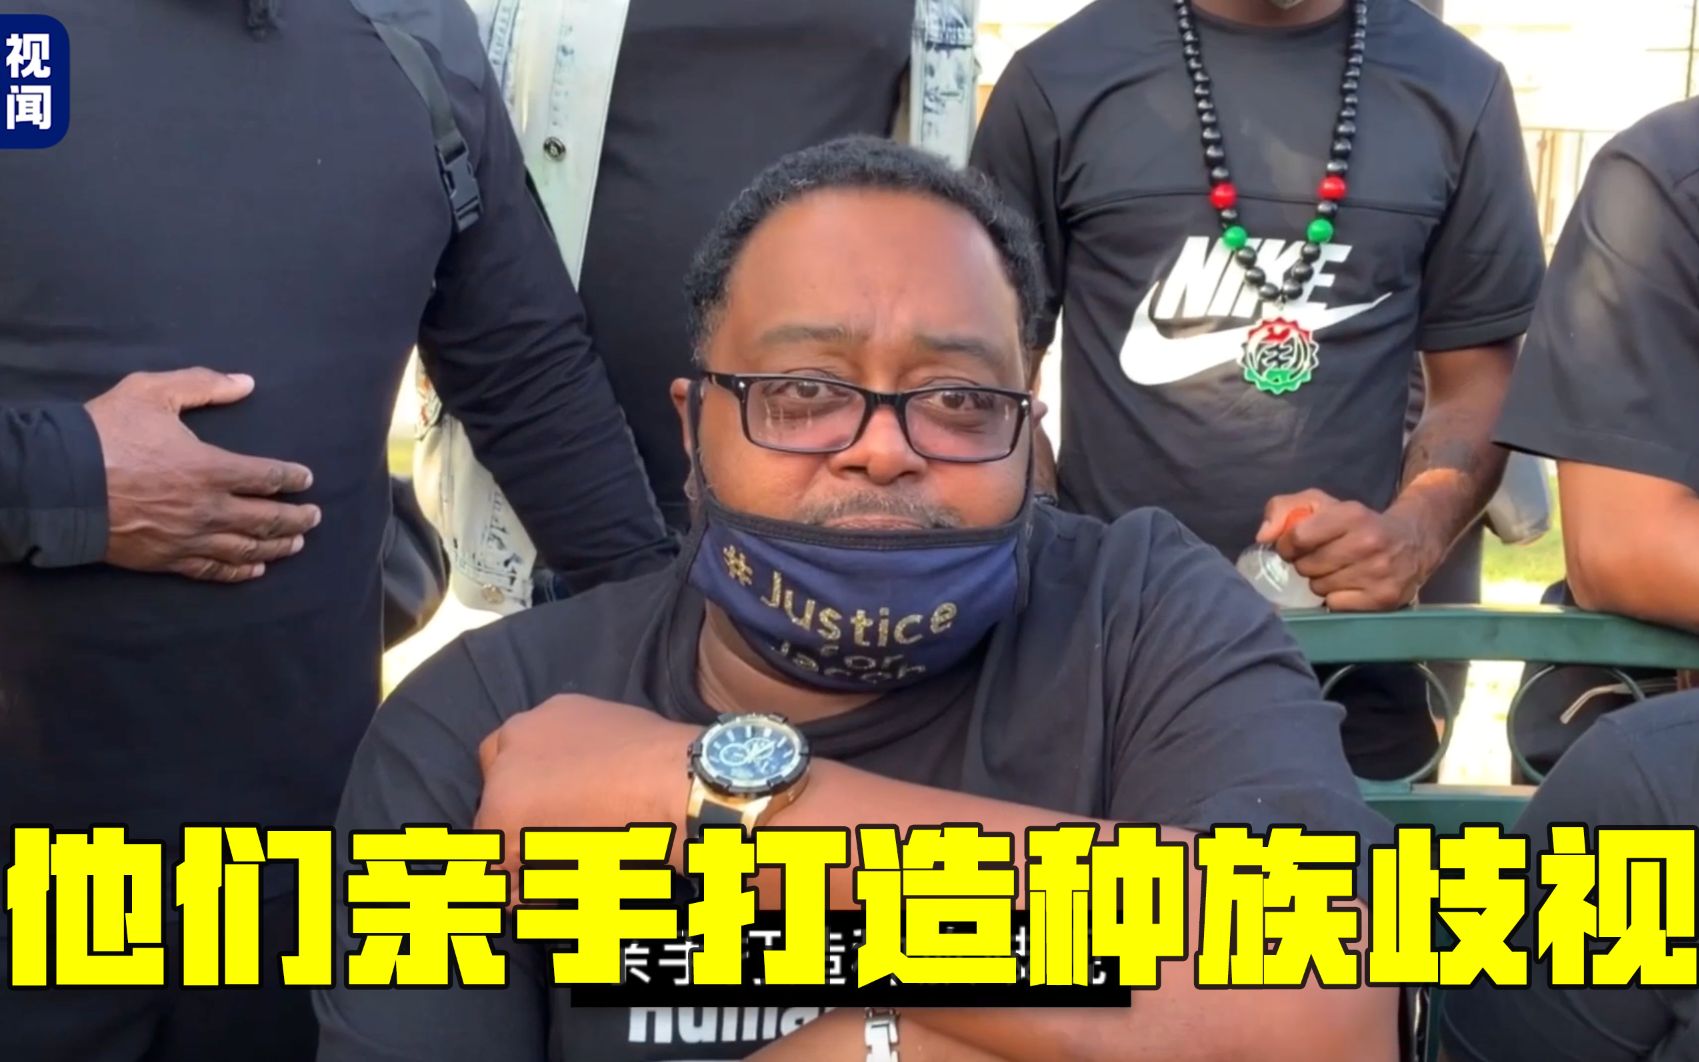 【央视专访】得知是中国记者 遭警察枪击非裔男子父亲接受采访